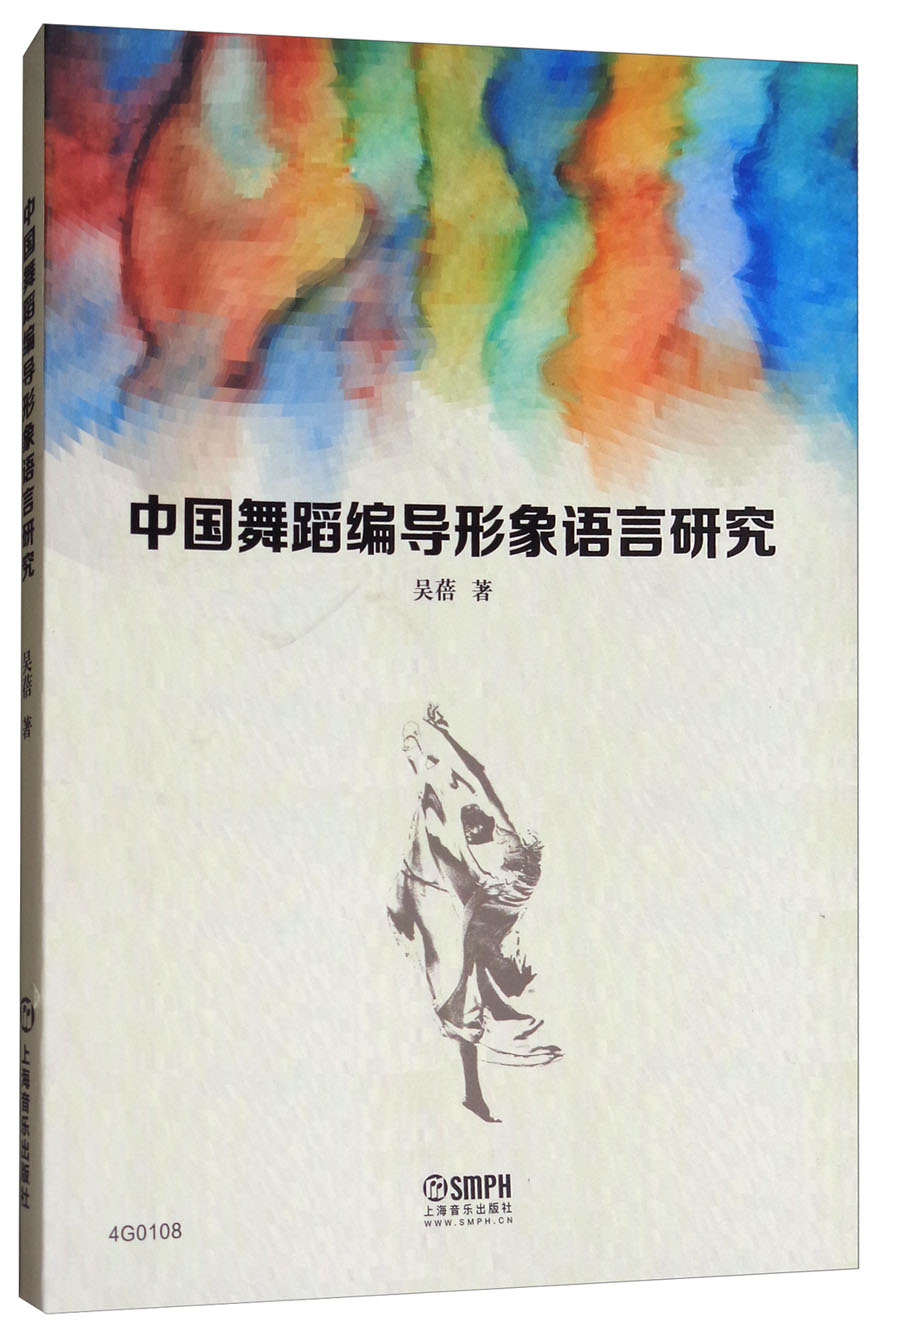 中国舞蹈编导形象语言研究 azw3格式下载